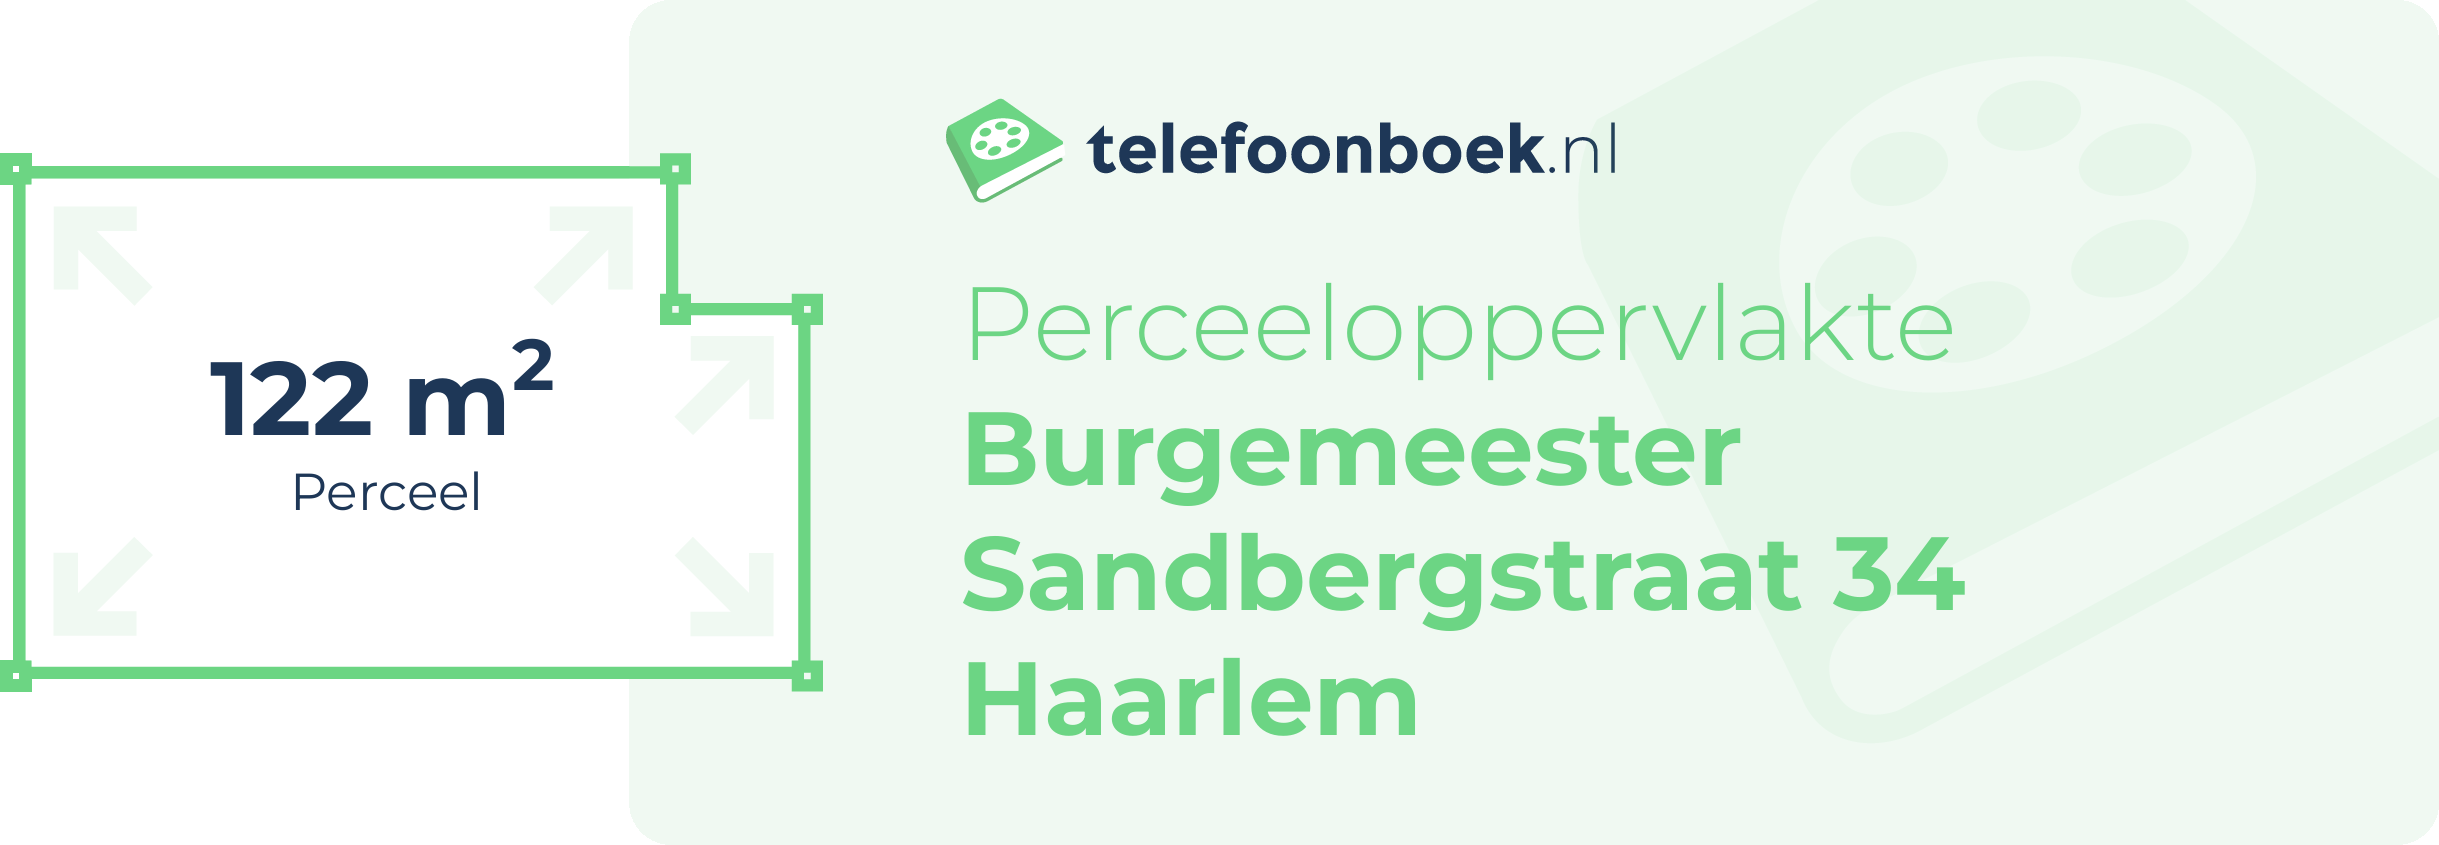 Perceeloppervlakte Burgemeester Sandbergstraat 34 Haarlem